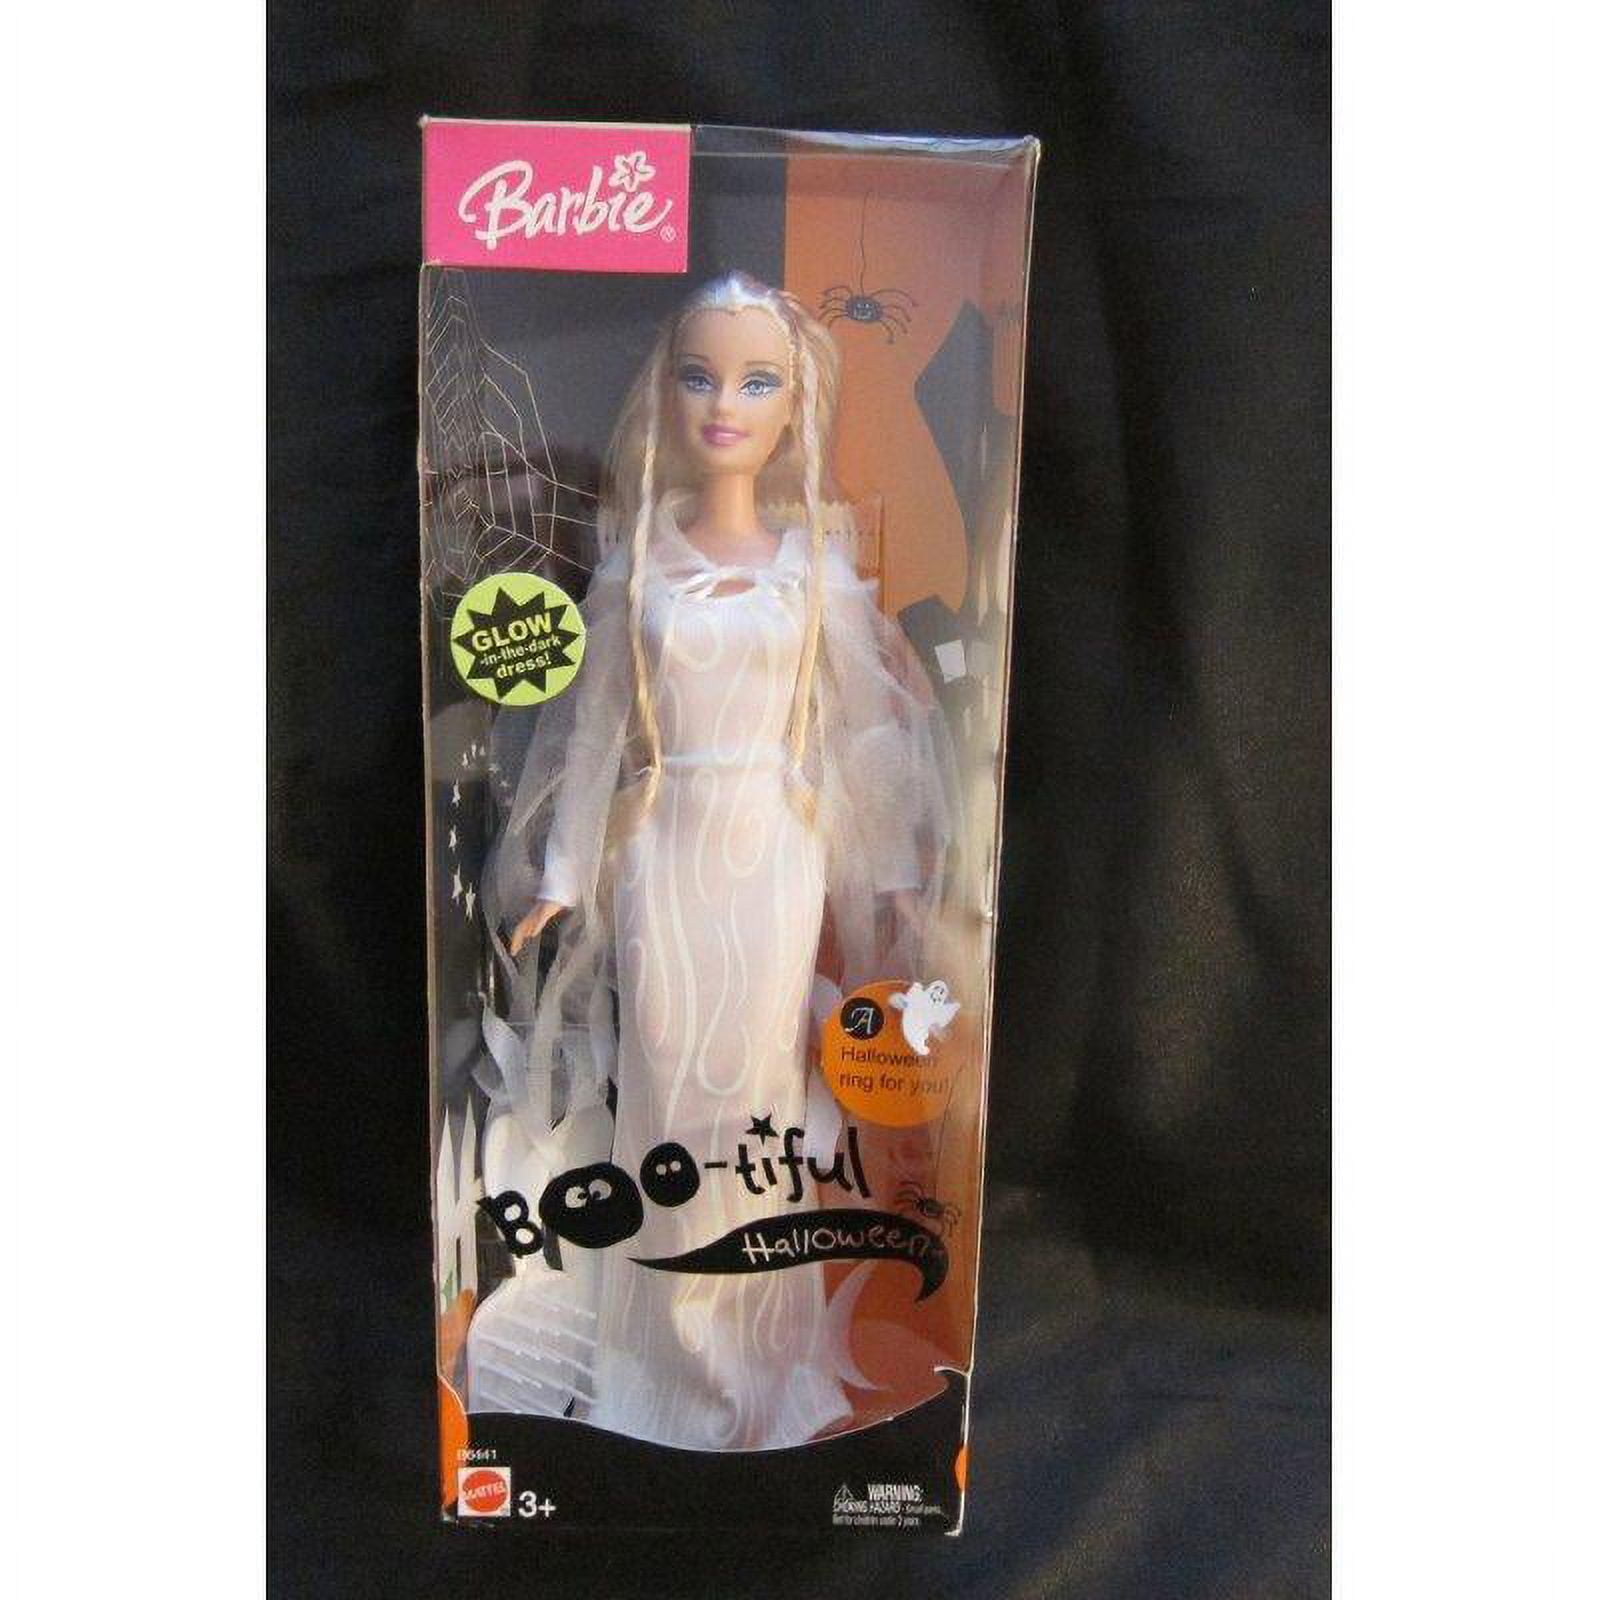 Boo-tiful Halloween Barbie Doll